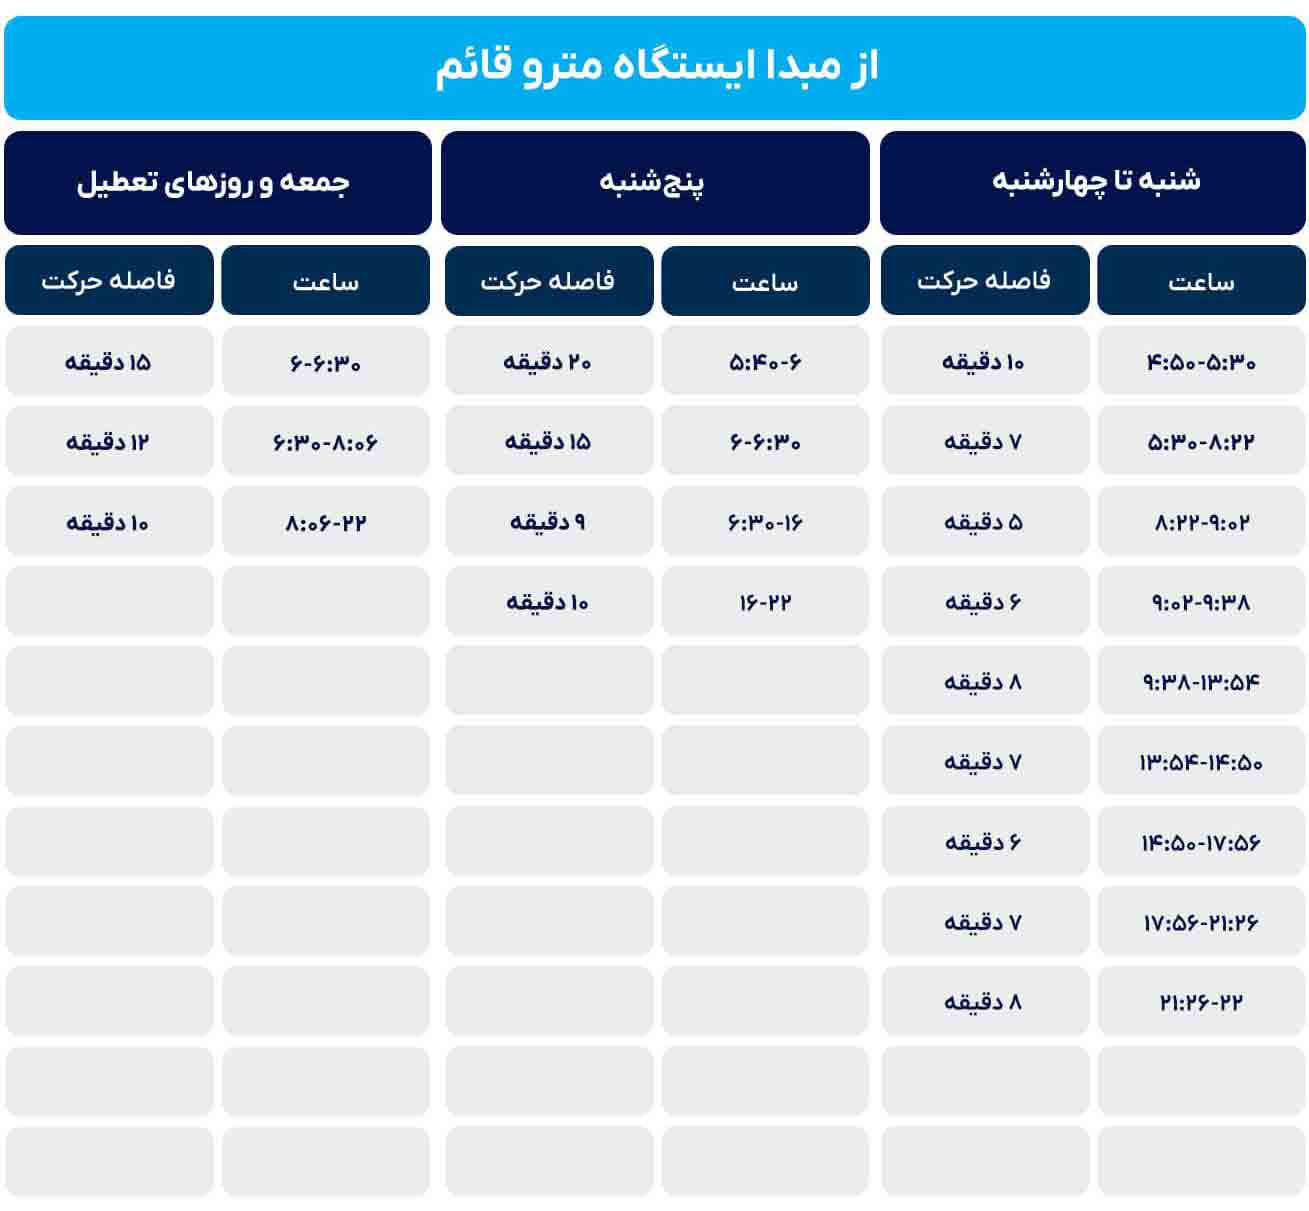 جدول زمانی حرکت قطارهای خط سه نقشه مترو تهران